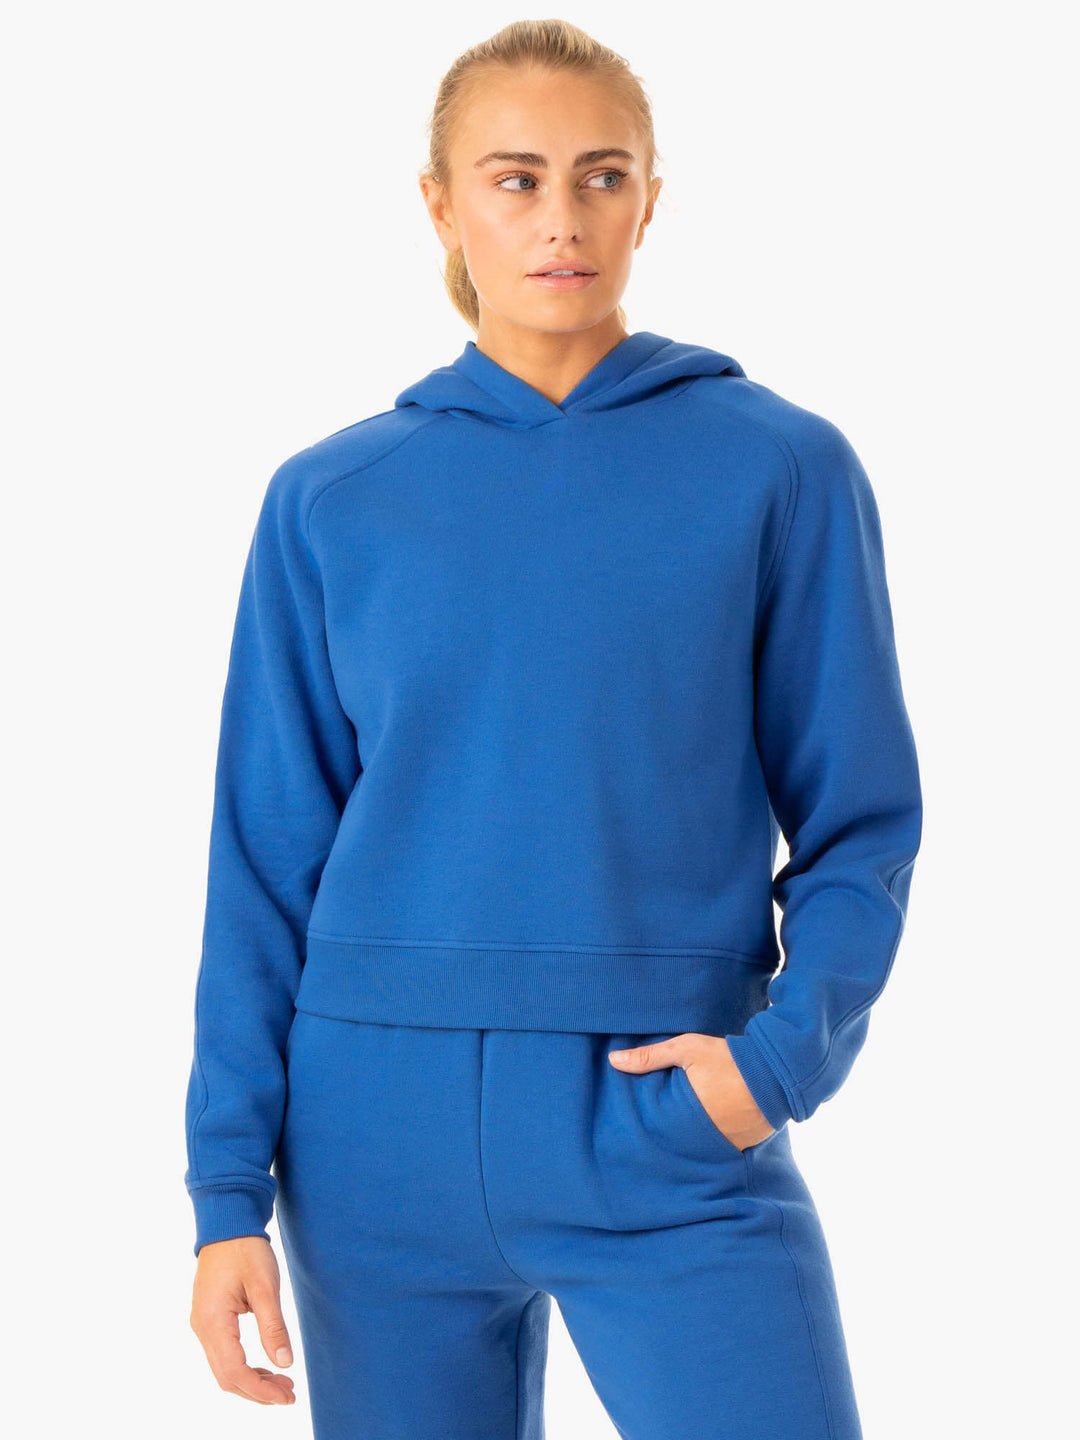 Sideline Hoodie - Cobalt Blue Clothing Ryderwear 